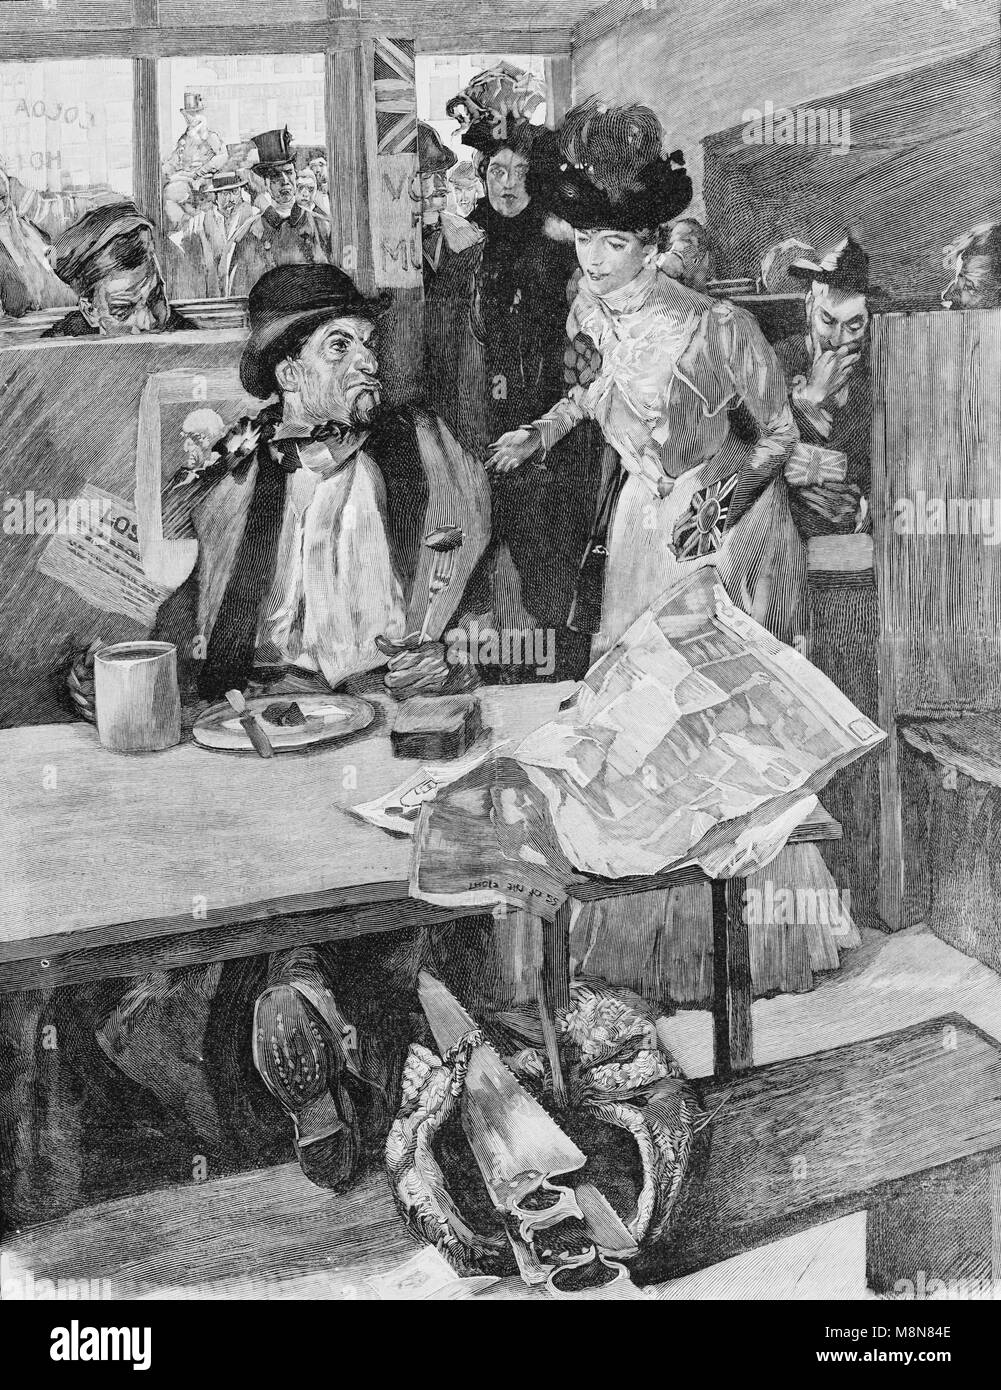 Señora haciendo propaganda electoral en un pub británico, imagen del semanario francés l'Illustration, de 13 de octubre de 1900 Foto de stock